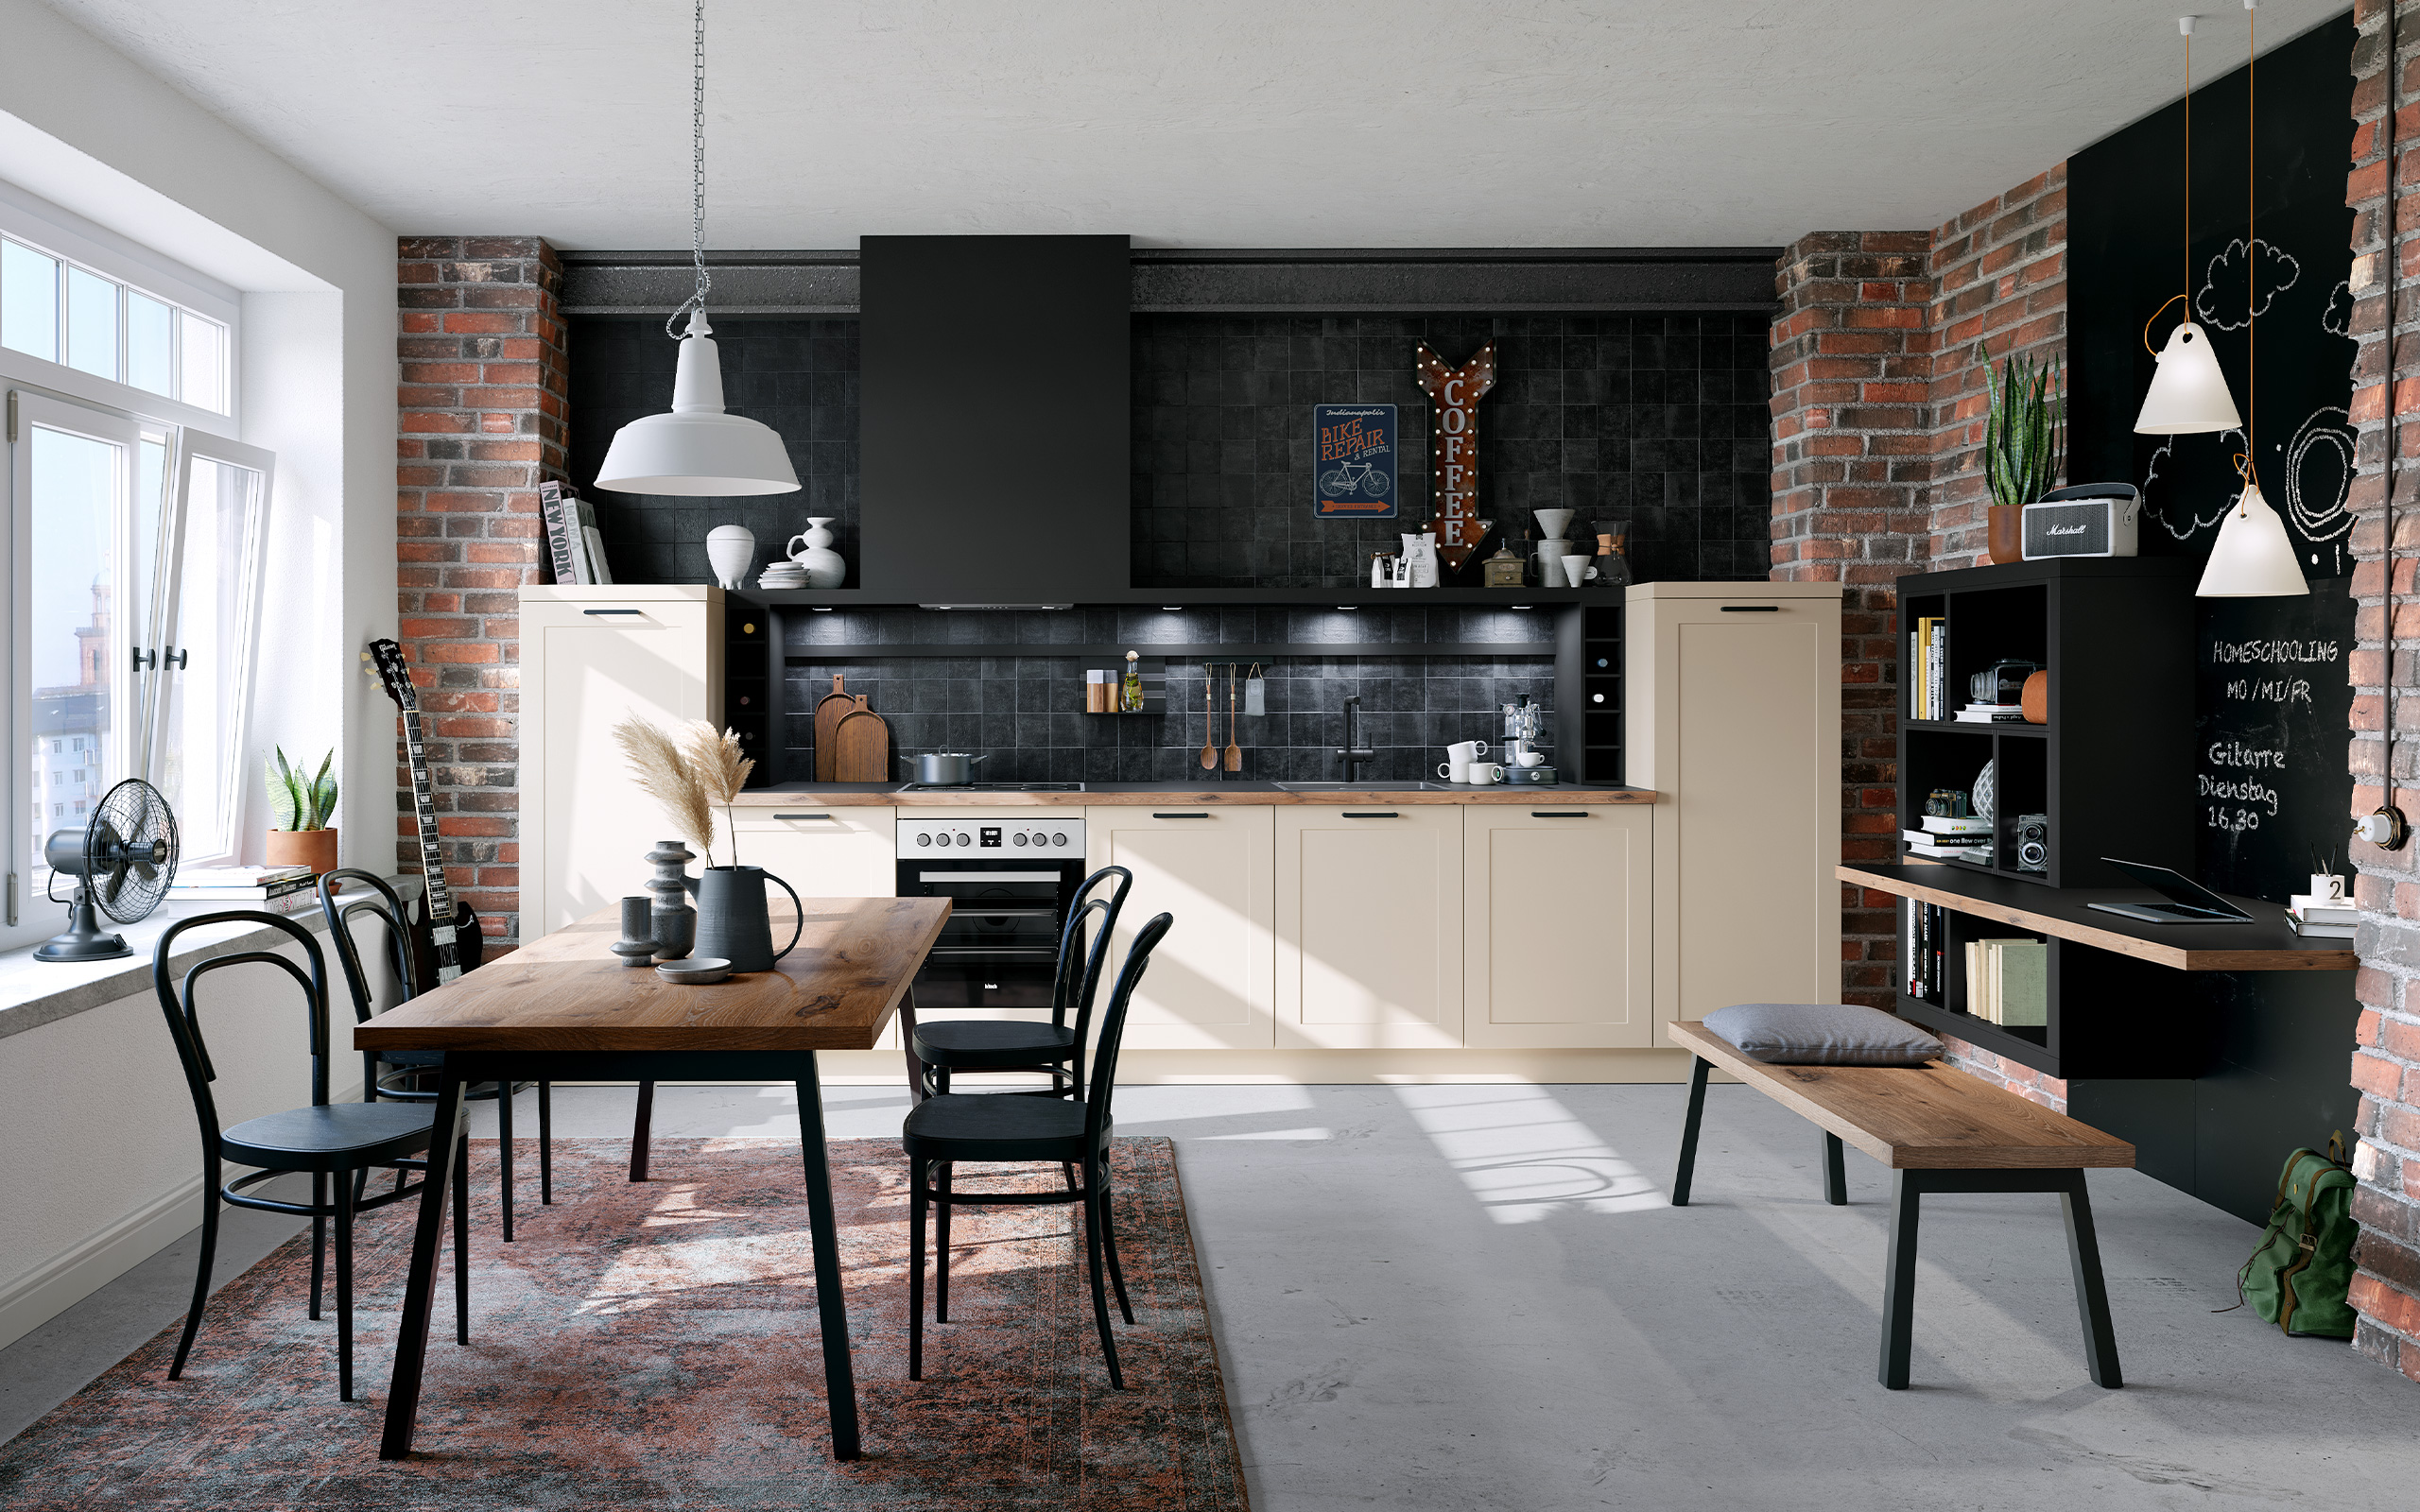 Imagen de la cocina completa concept130 ROMA Crema Magnolia con mueble de cocina, mesa de comedor con sillas y mesa de trabajo con banco.